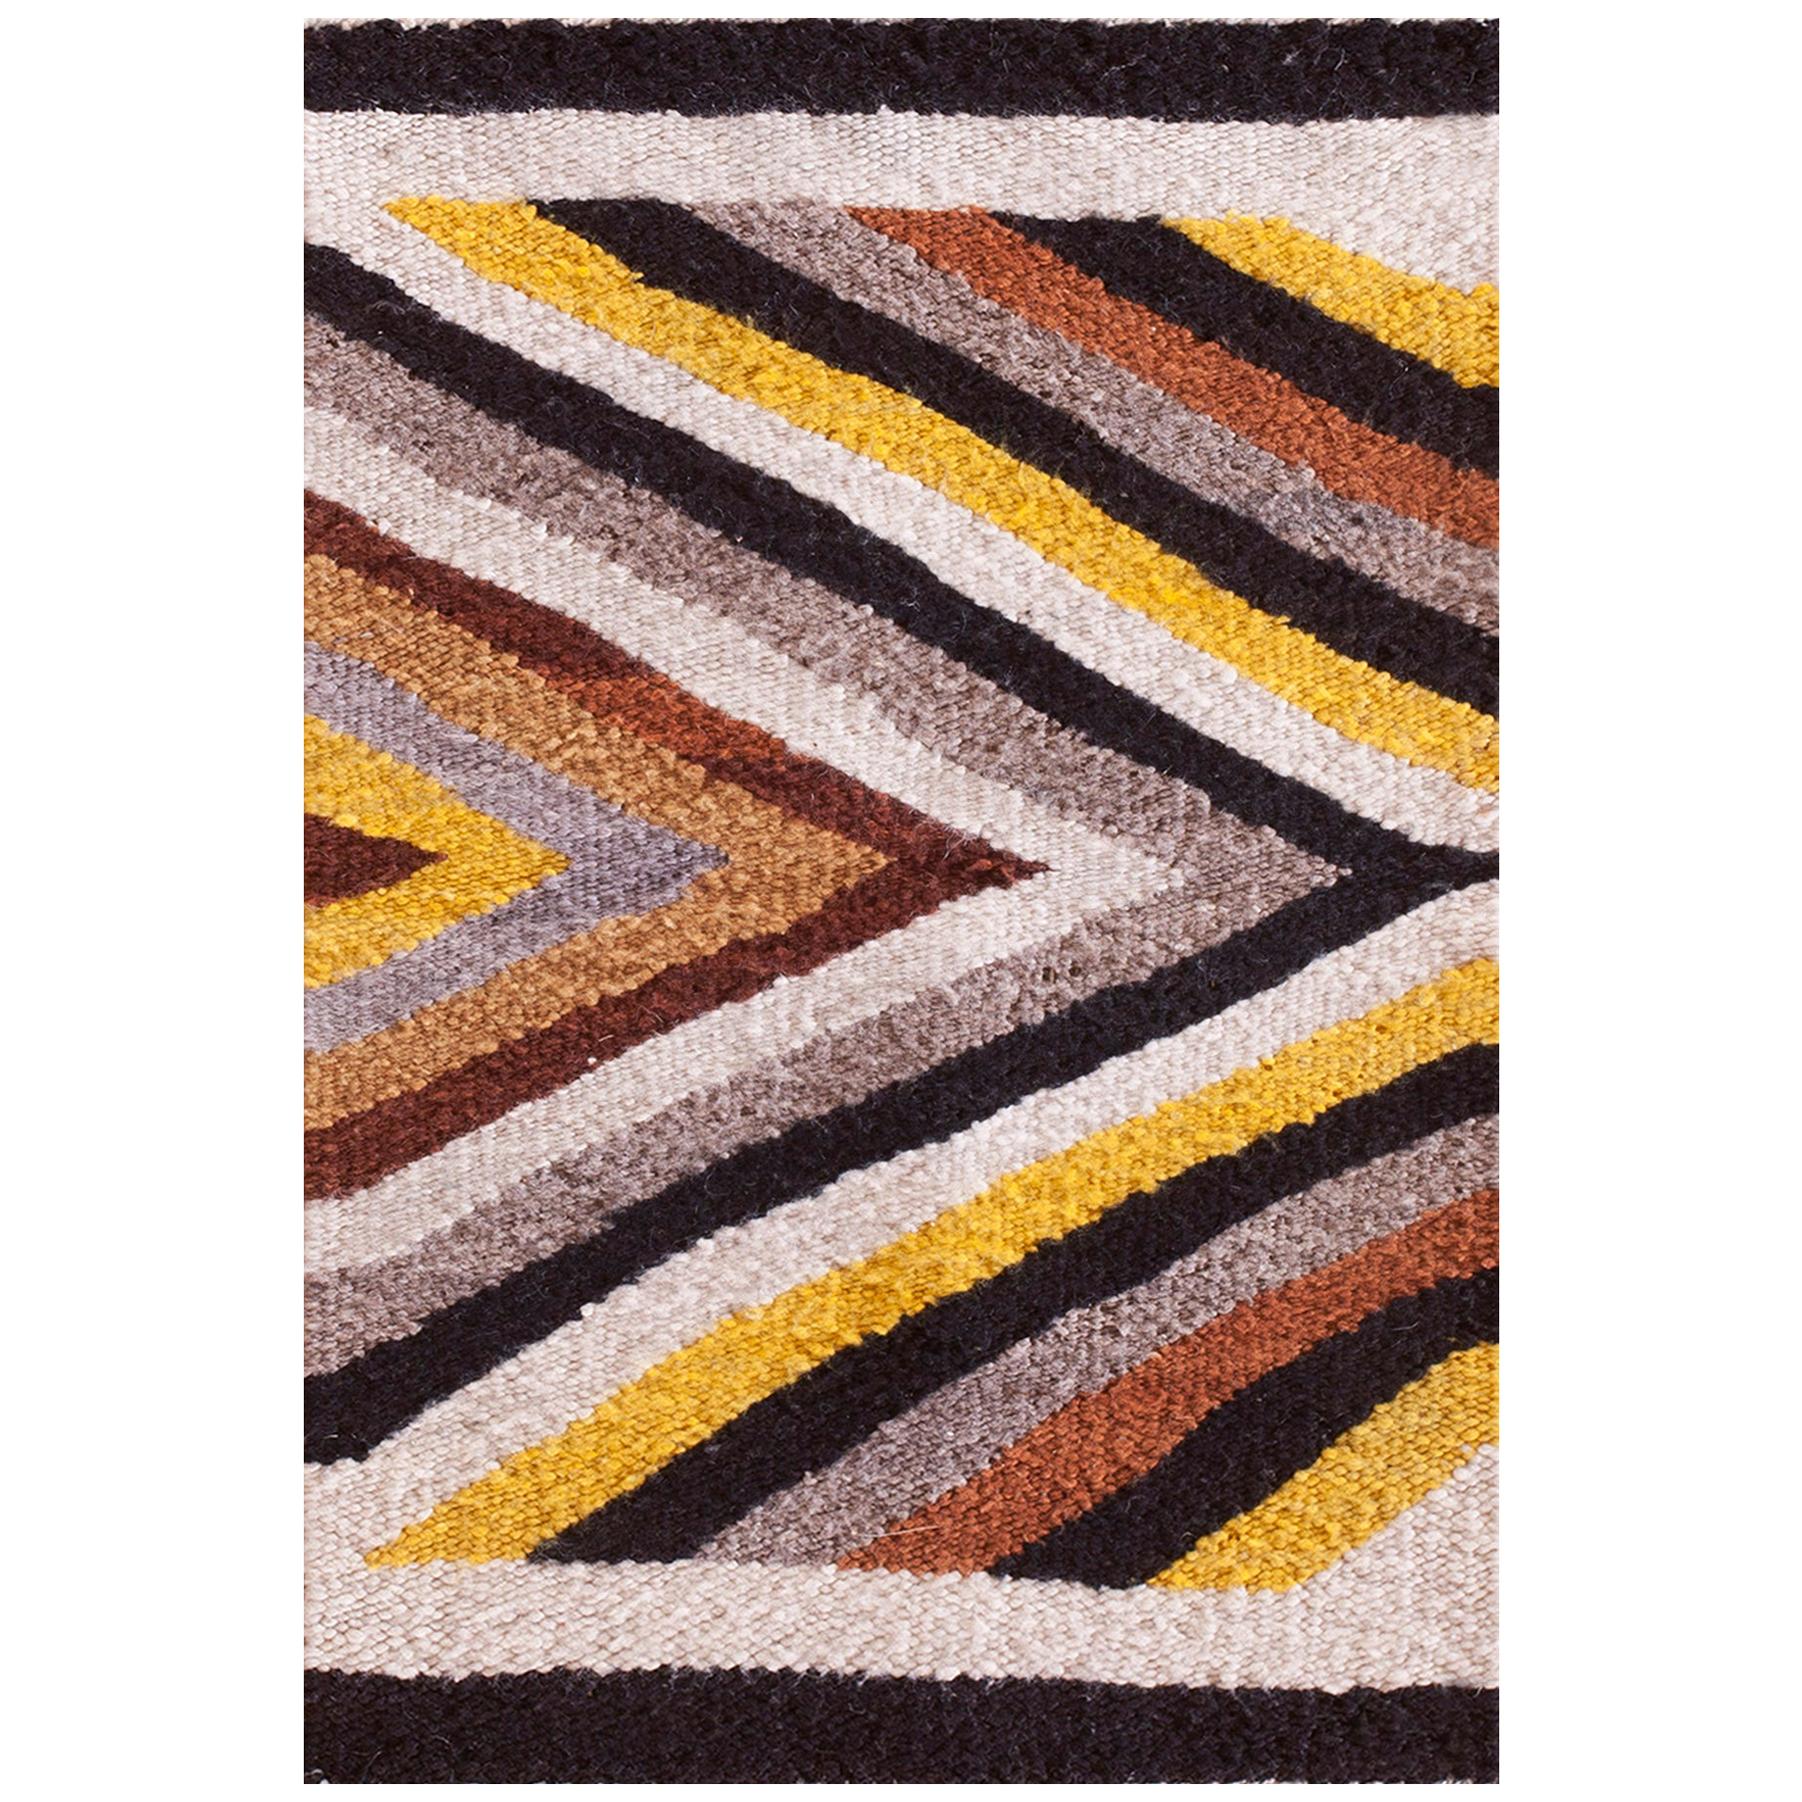 Amerikanischer Navajo-Teppich aus der Mitte des 20. Jahrhunderts ( 1'4" x 2'6" - 41 x 62)